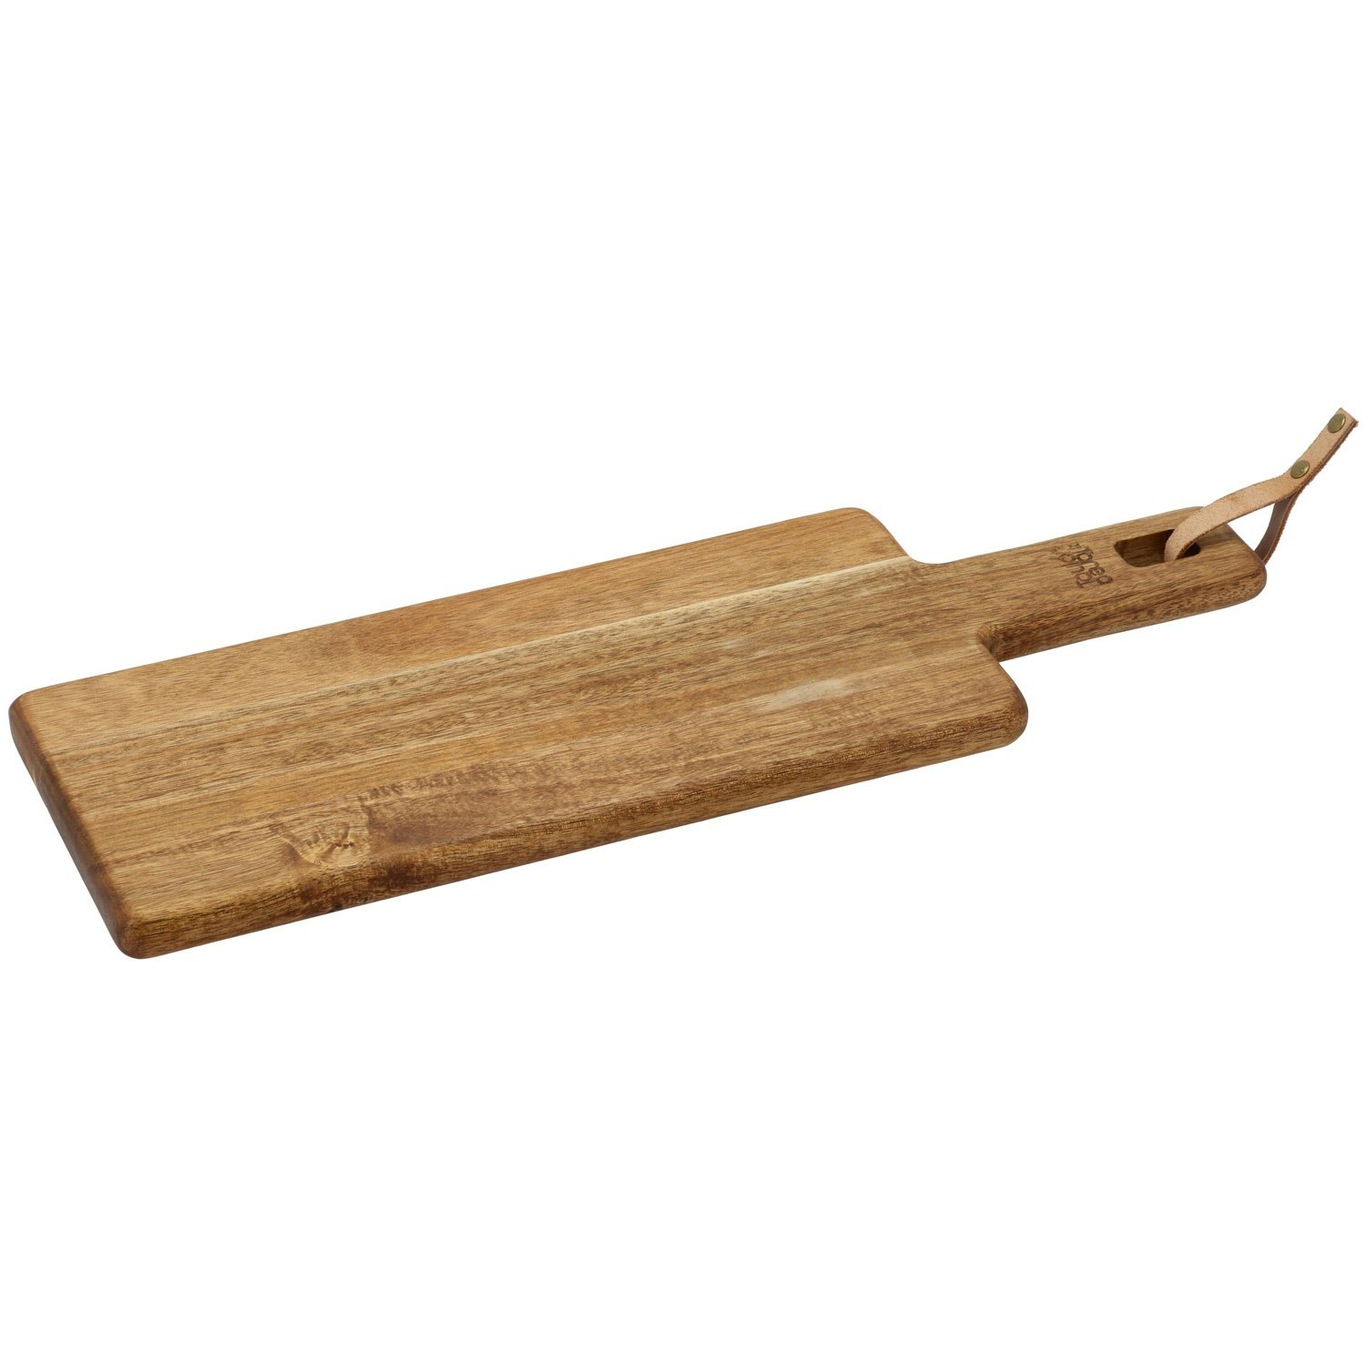 Tarragon Chopping Board, 15x46 cm